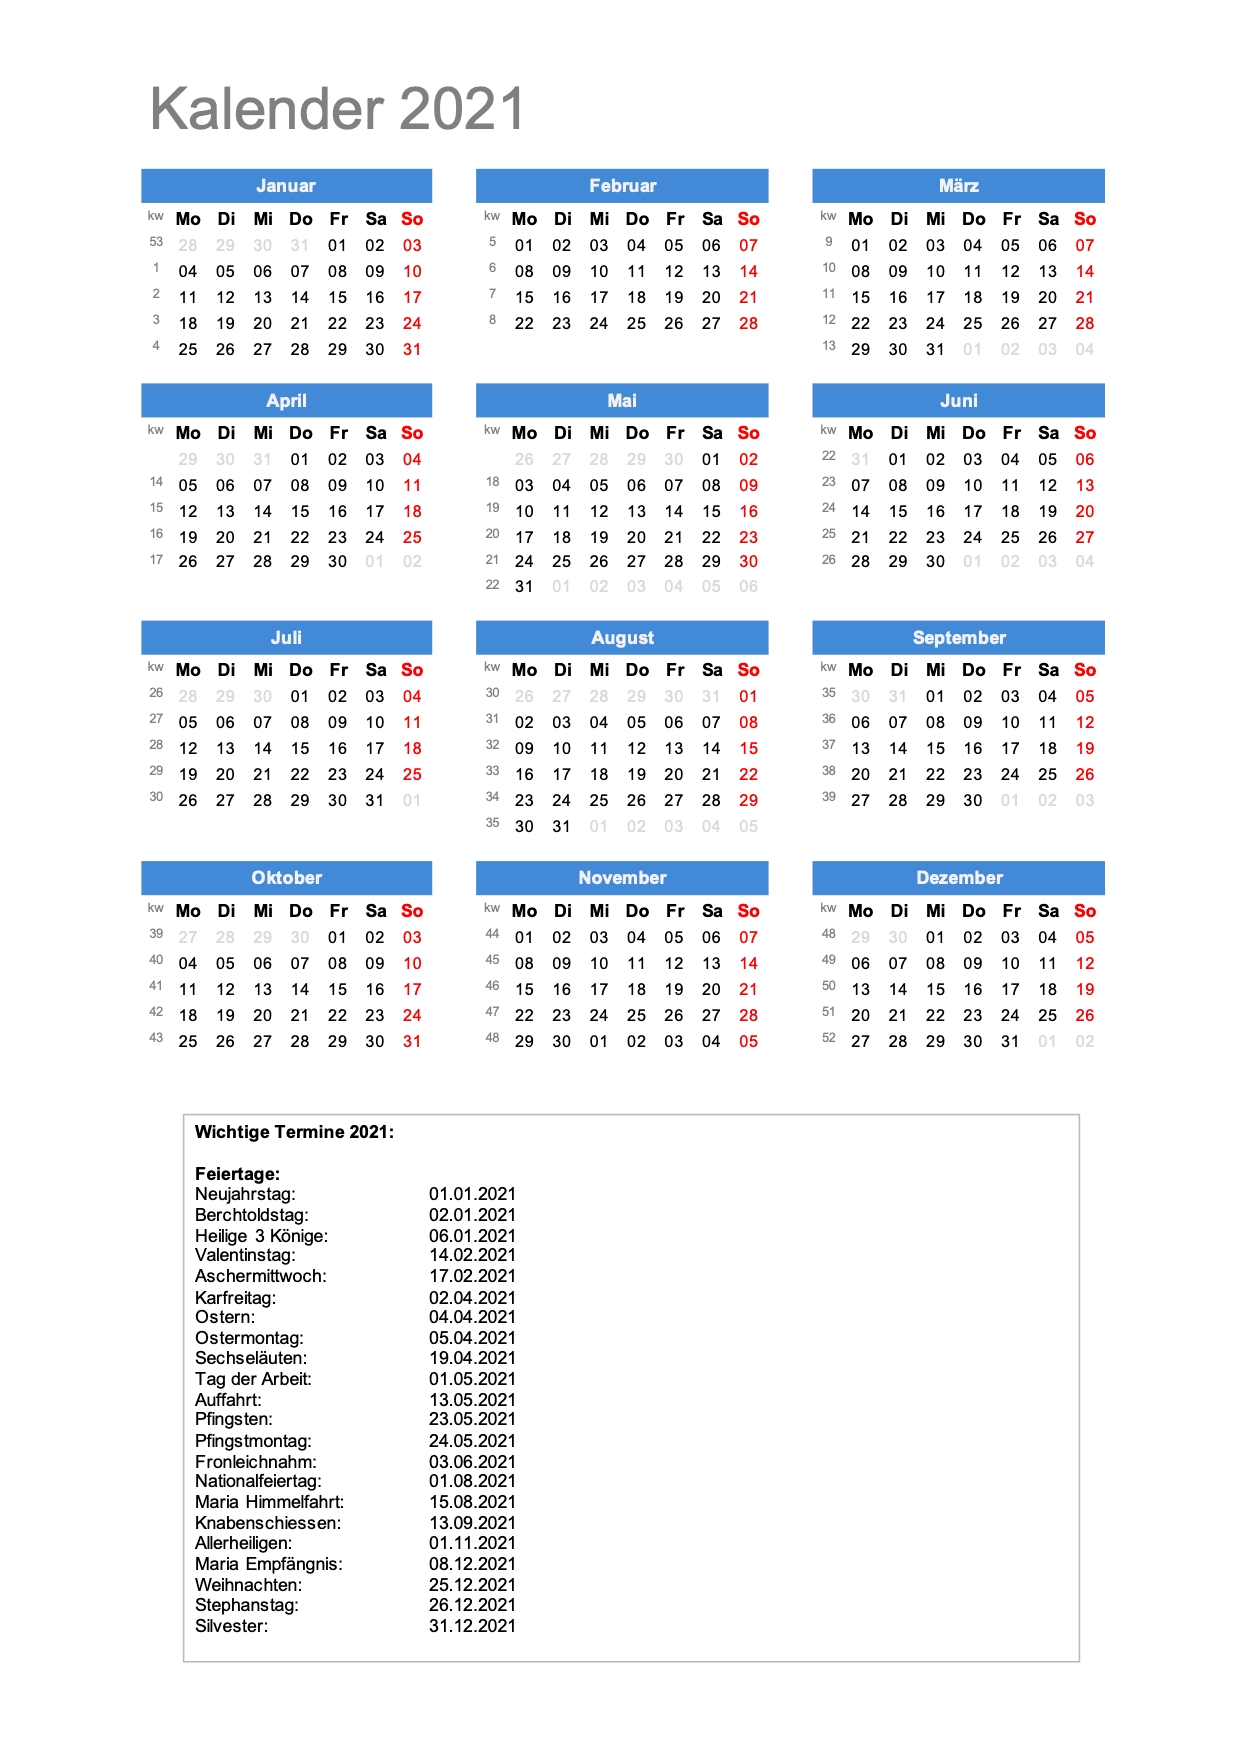 Get Kw Kalender 2021 Dezember